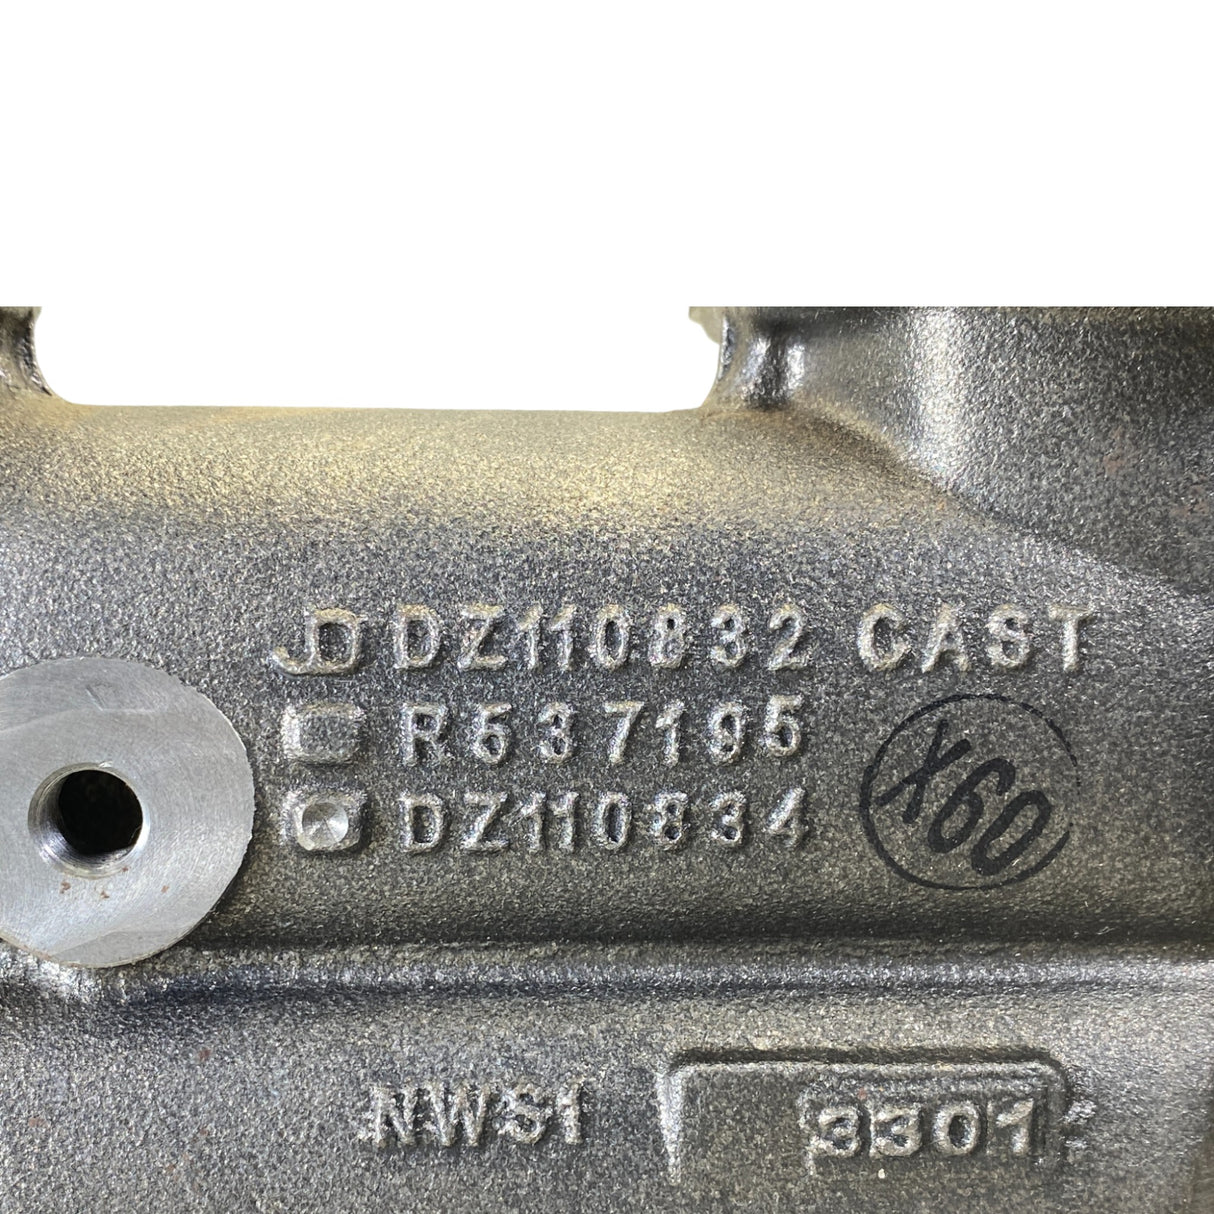 Dz110831 Genuine John Deere Exhaust Manifold